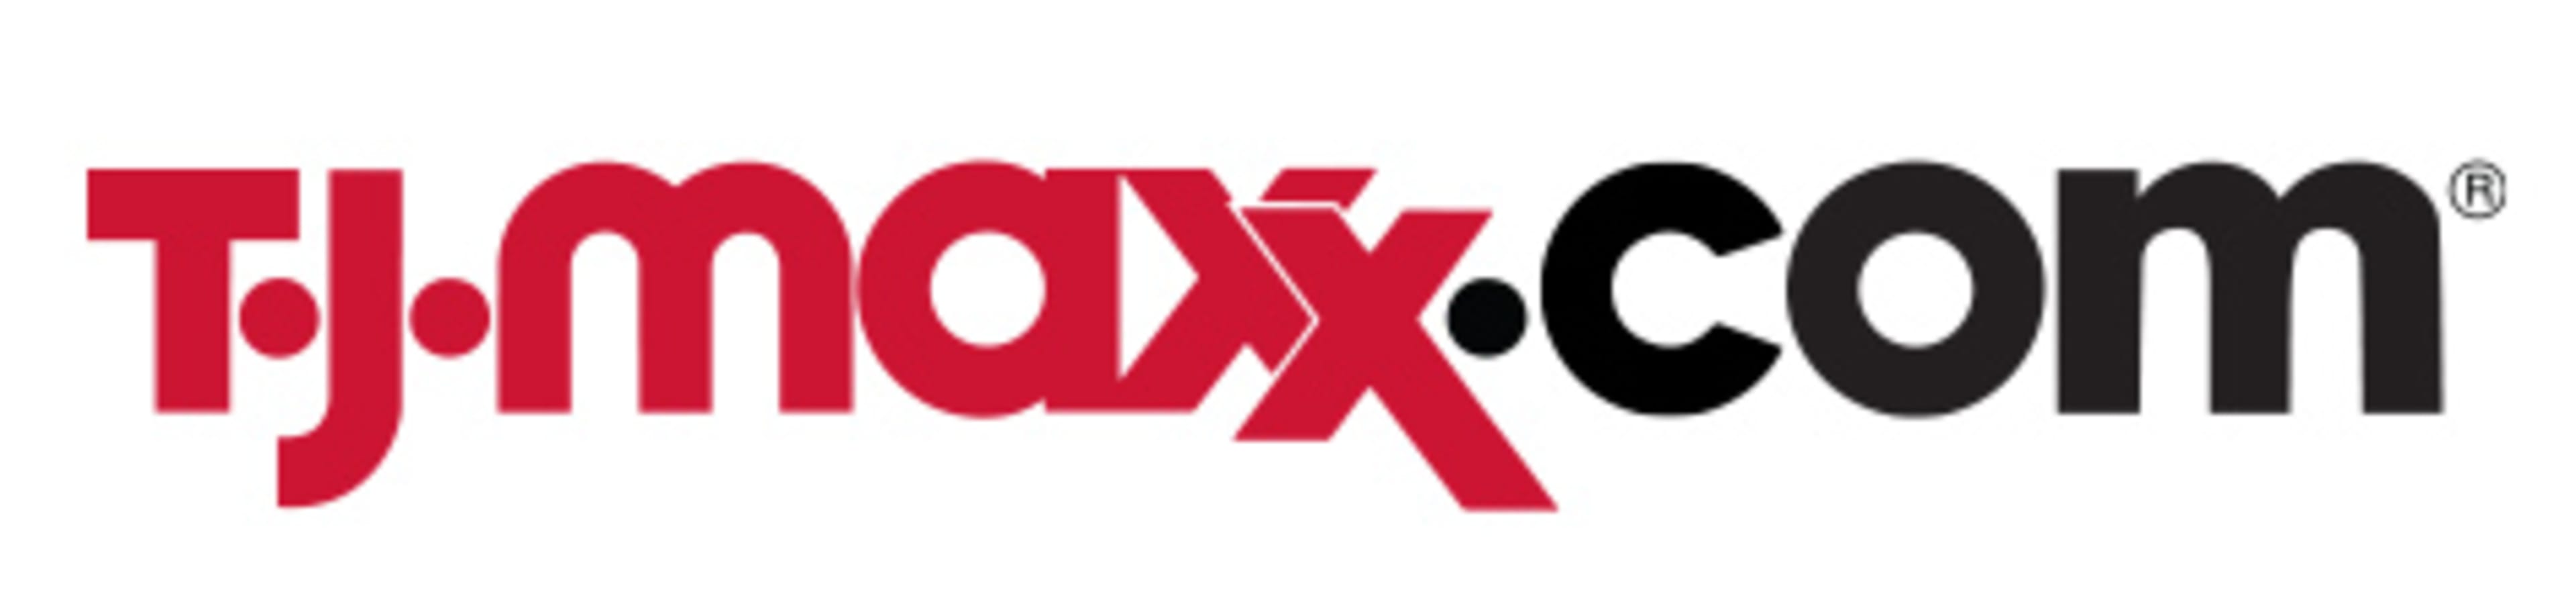 TJ Maxx Code